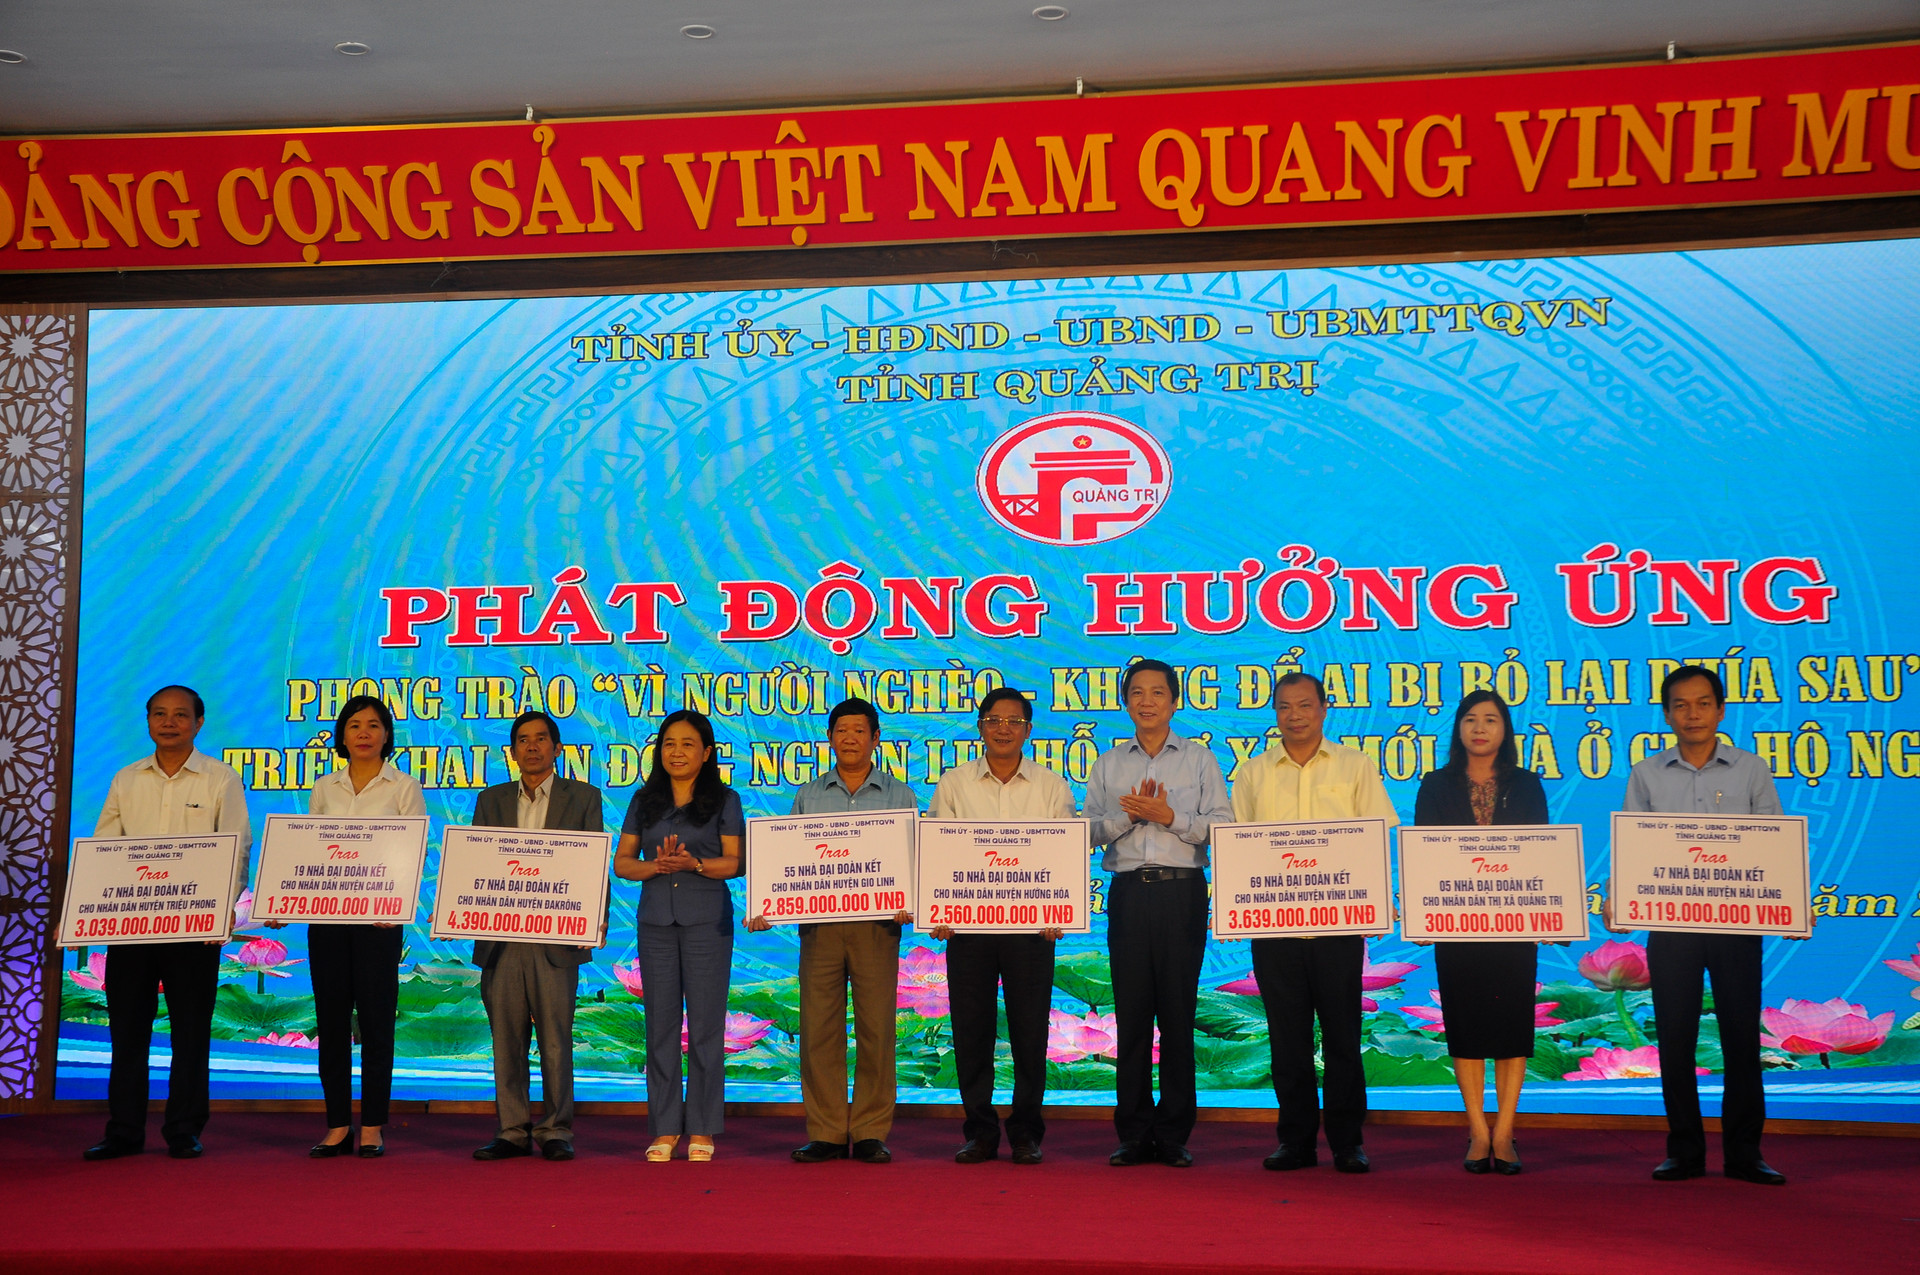 Lãnh đạo tỉnh Quảng Trị đã trao nguồn vận động xây dựng nhà ở với tổng số tiền 21 tỷ đồng cho các huyện, thị xã.